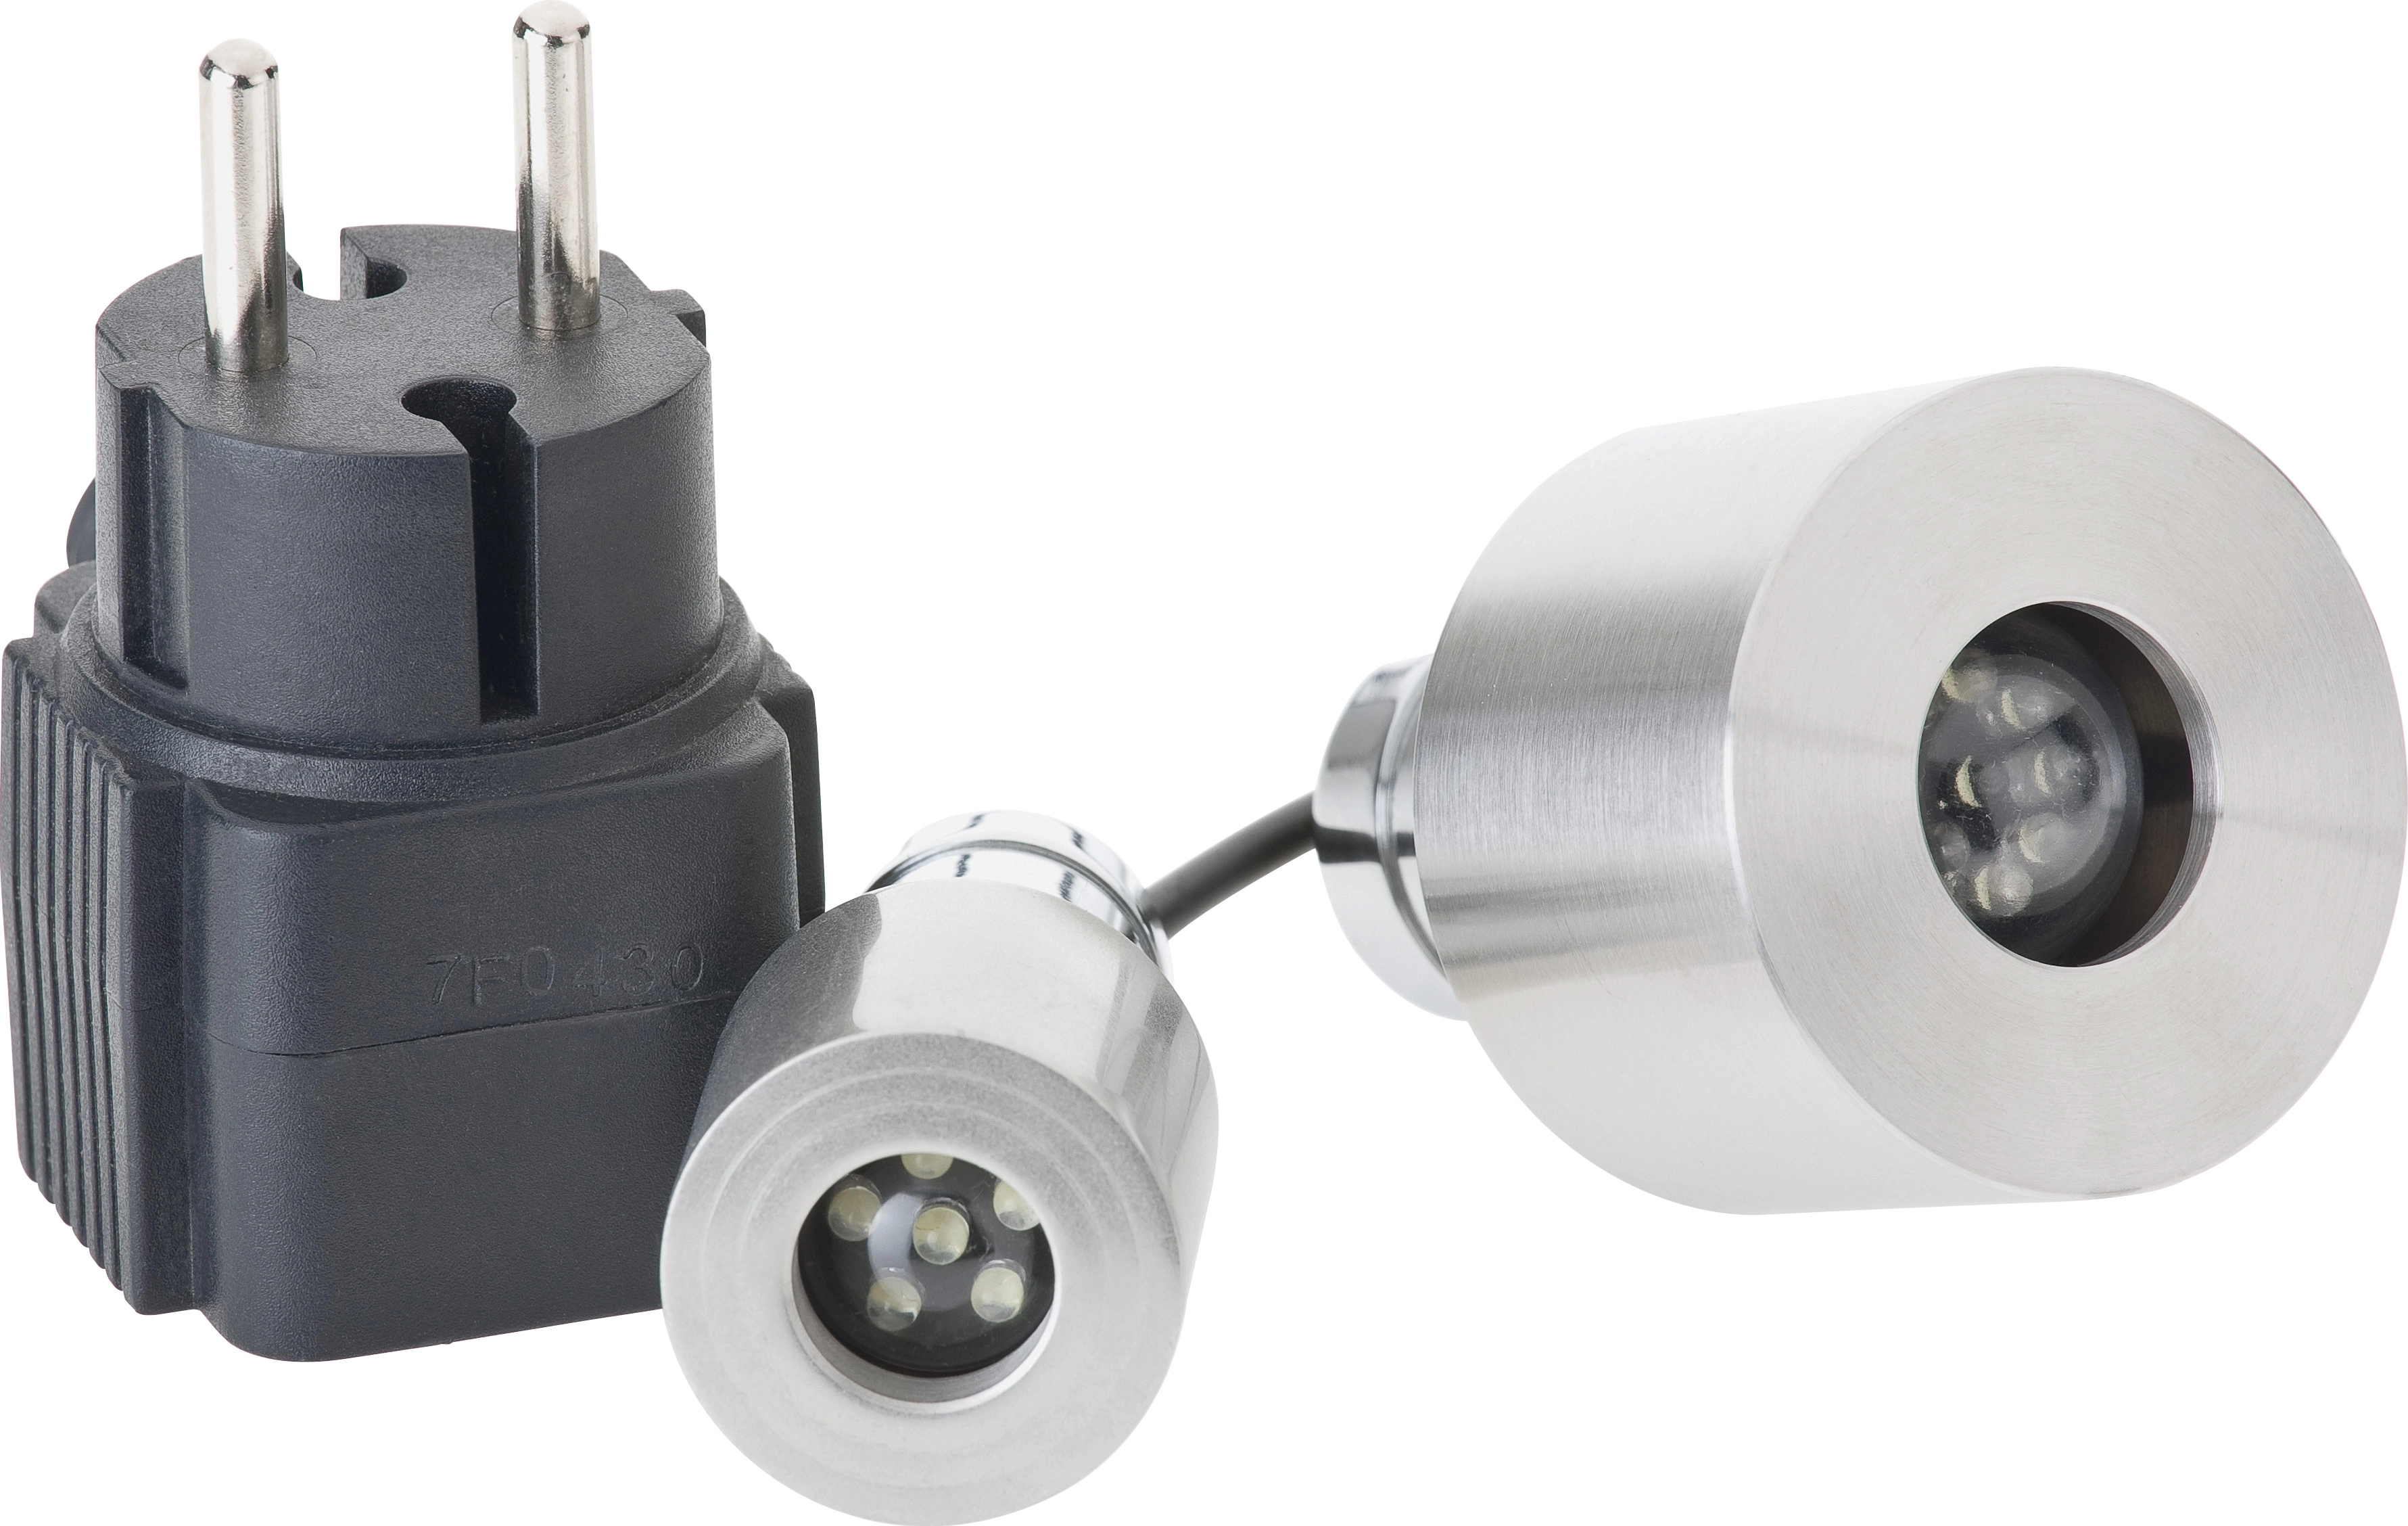 Oase LED-Scheinwerfer LunaLed 6s kaufen OBI bei